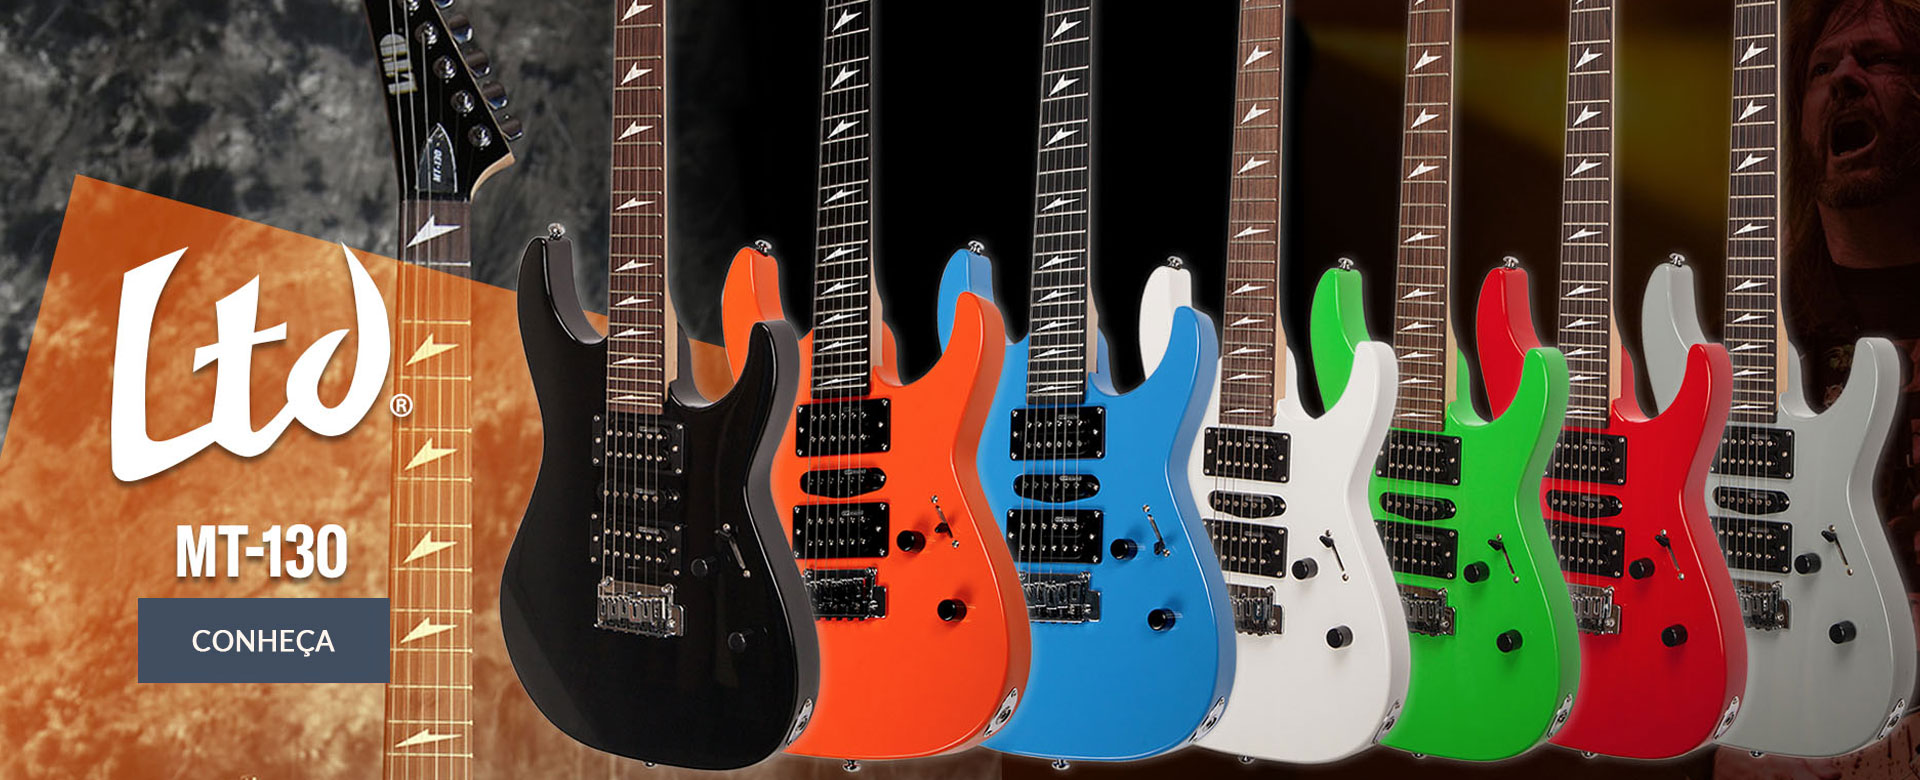 Guitarras ESP MT-130 LTD